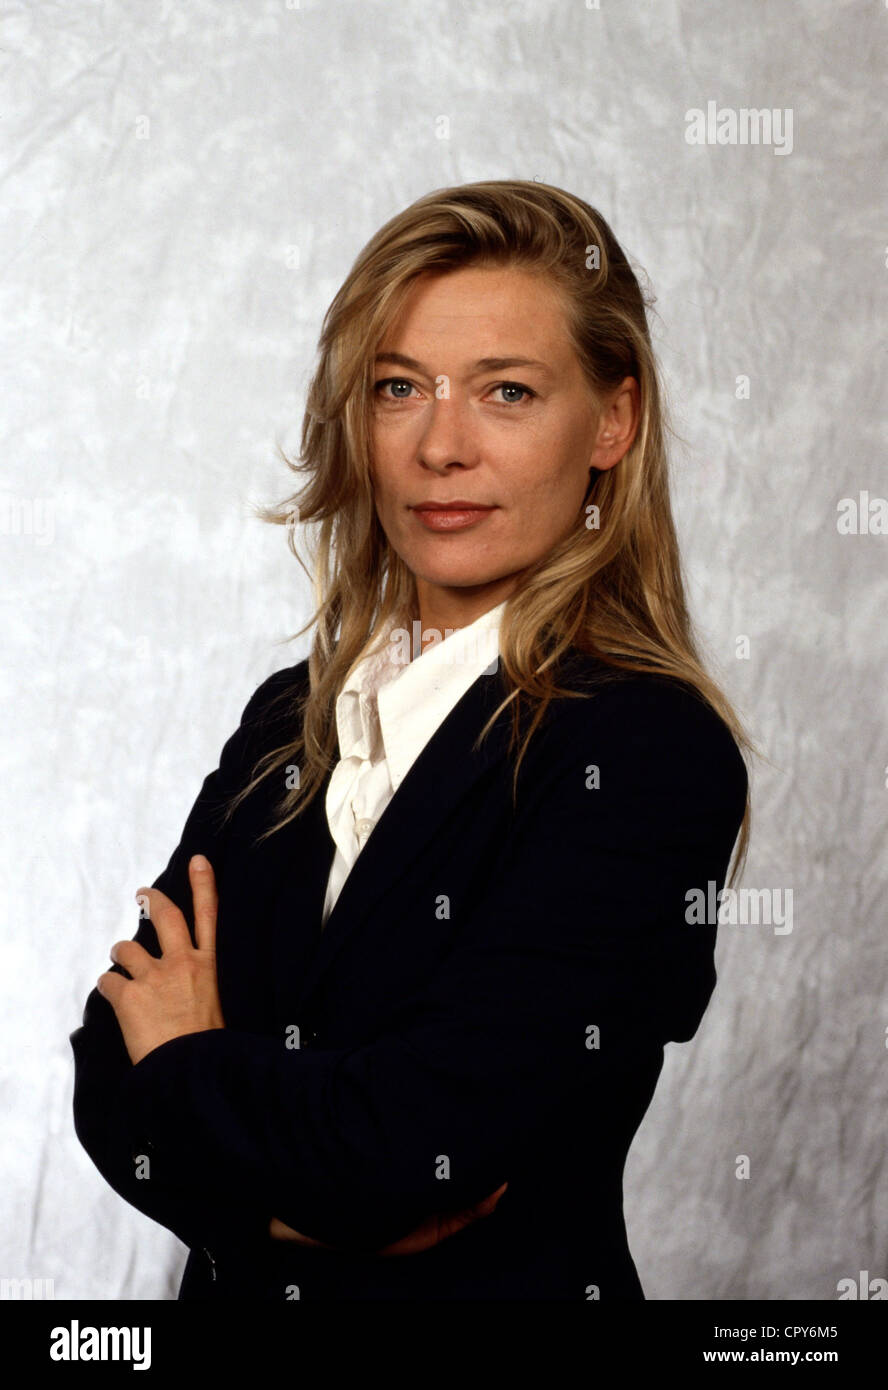 Rudnik, Barbara, 27.7.1958 - 23.5.2009, German actress, half length, 1997, Stock Photo